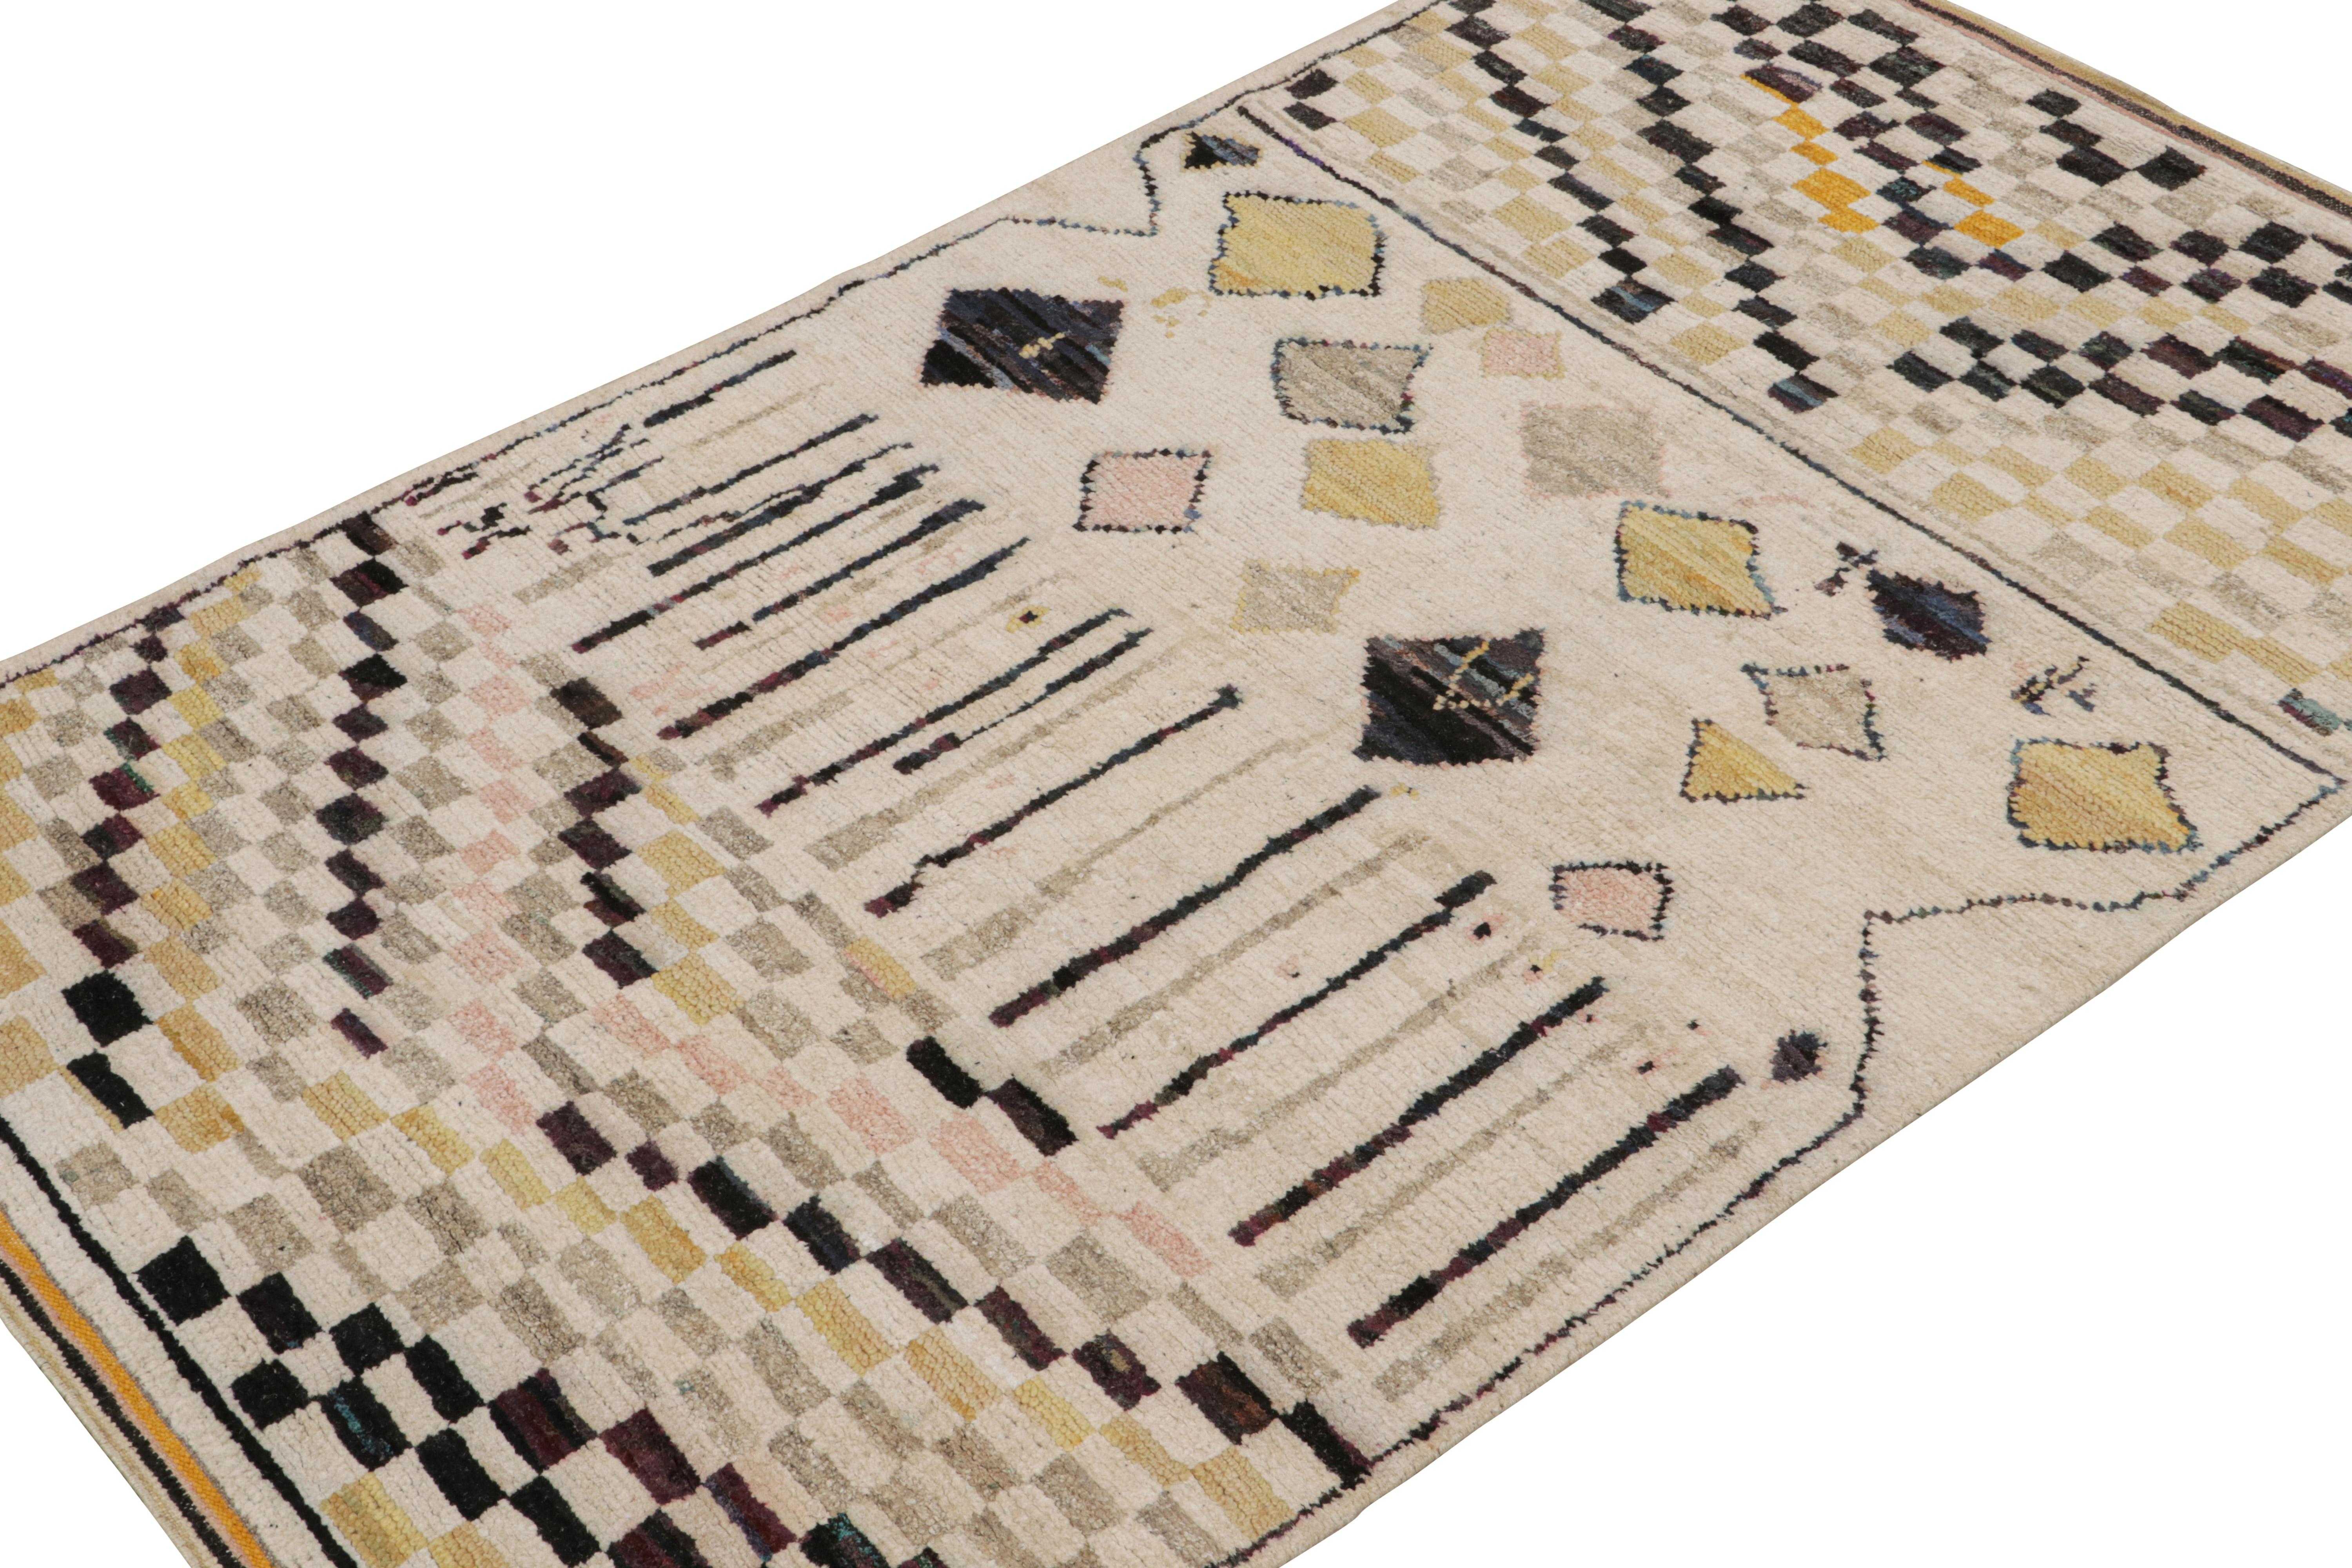 Noué à la main en laine, soie et coton, ce tapis 3x10 est un nouvel ajout à la collection de tapis marocains de Rug & Kilim. 

Sur le Design/One

Ces motifs représentent une version moderne du style primitiviste berbère, avec des motifs géométriques